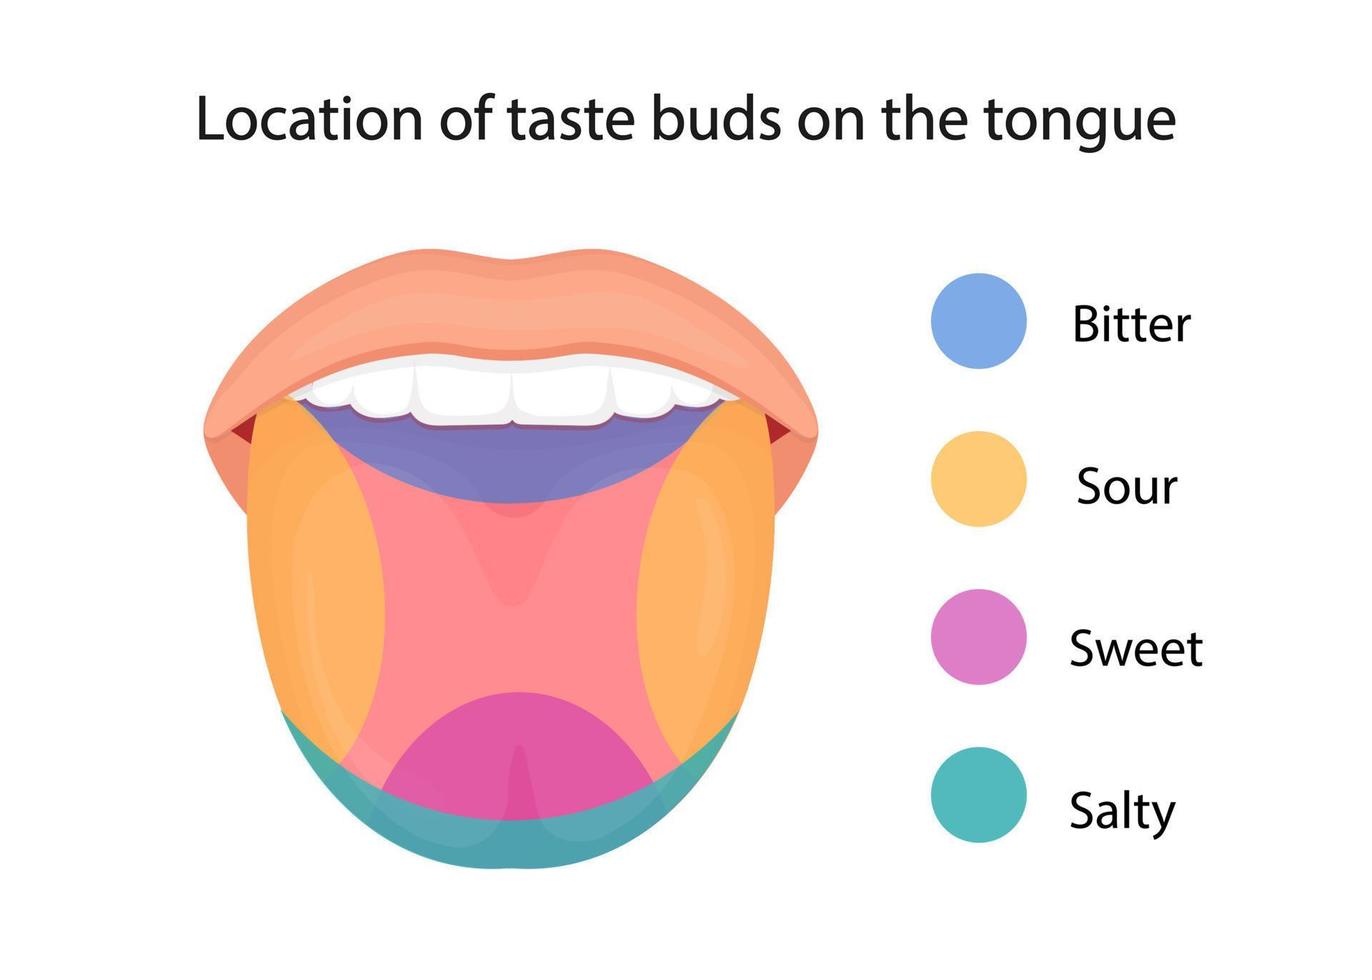 papille gustative della lingua, sapore aspro, dolce, amaro, salato e umami. illustrazione vettoriale